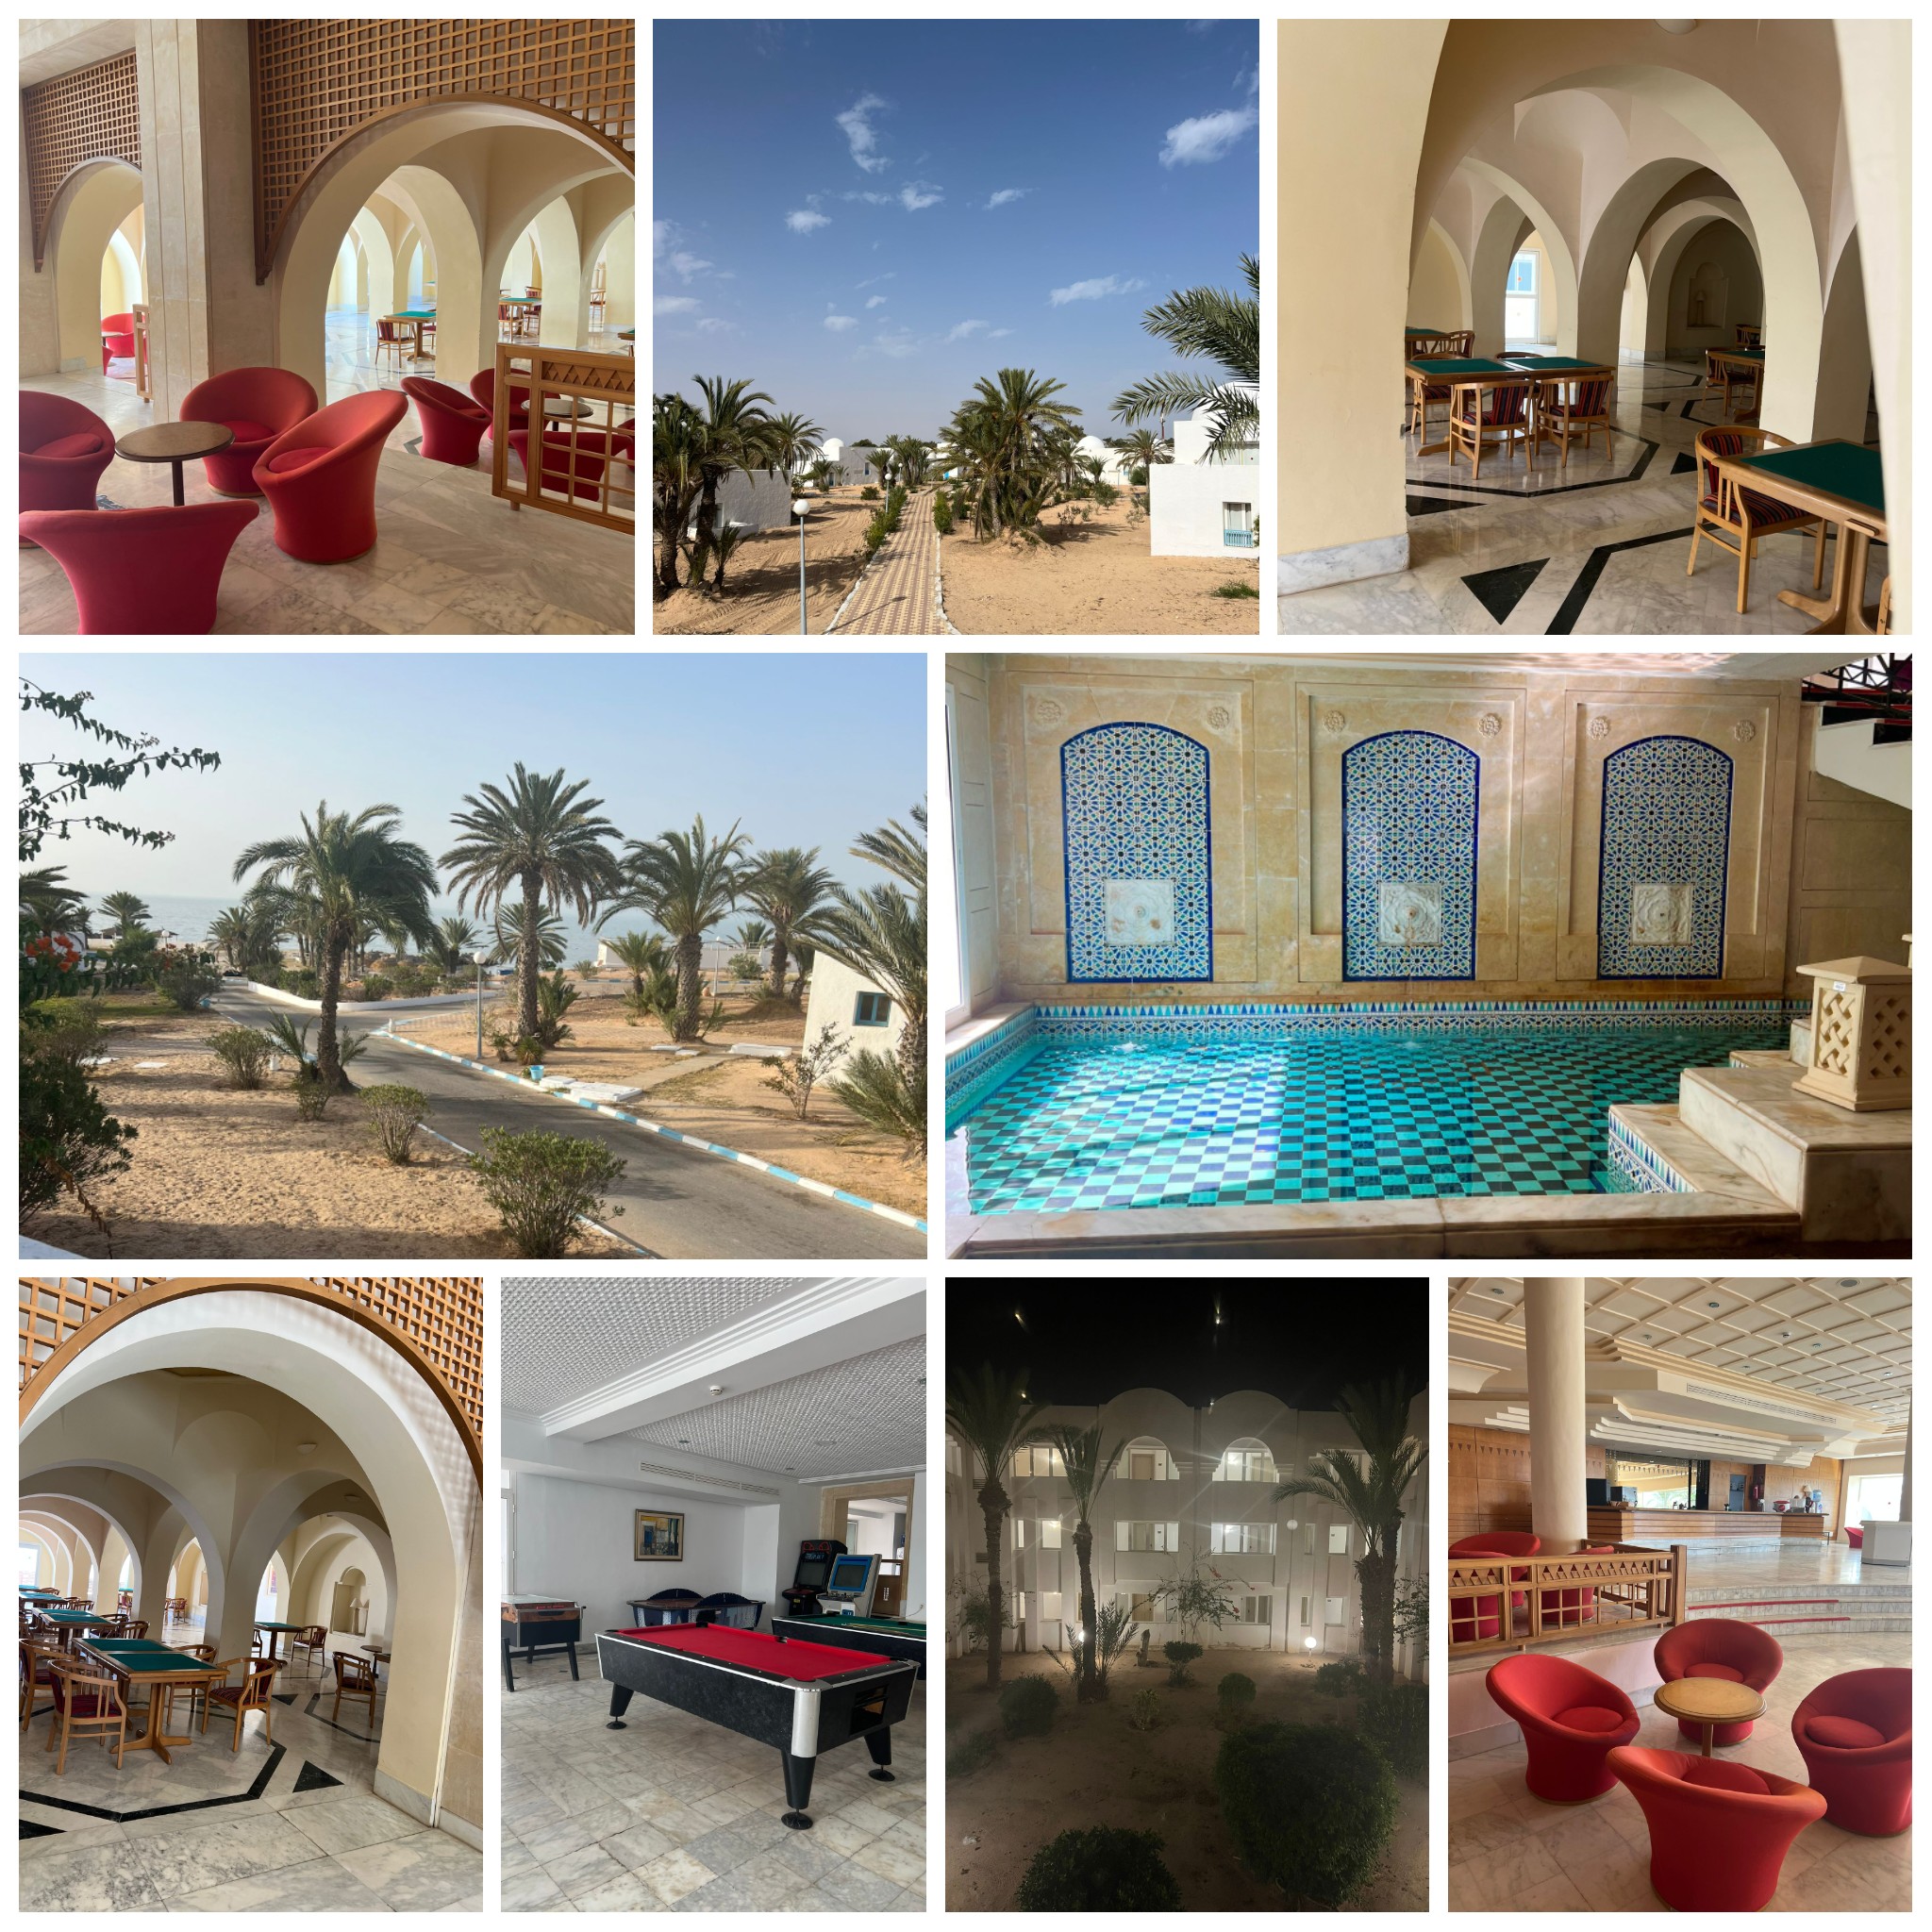 Hôtel de Djerba